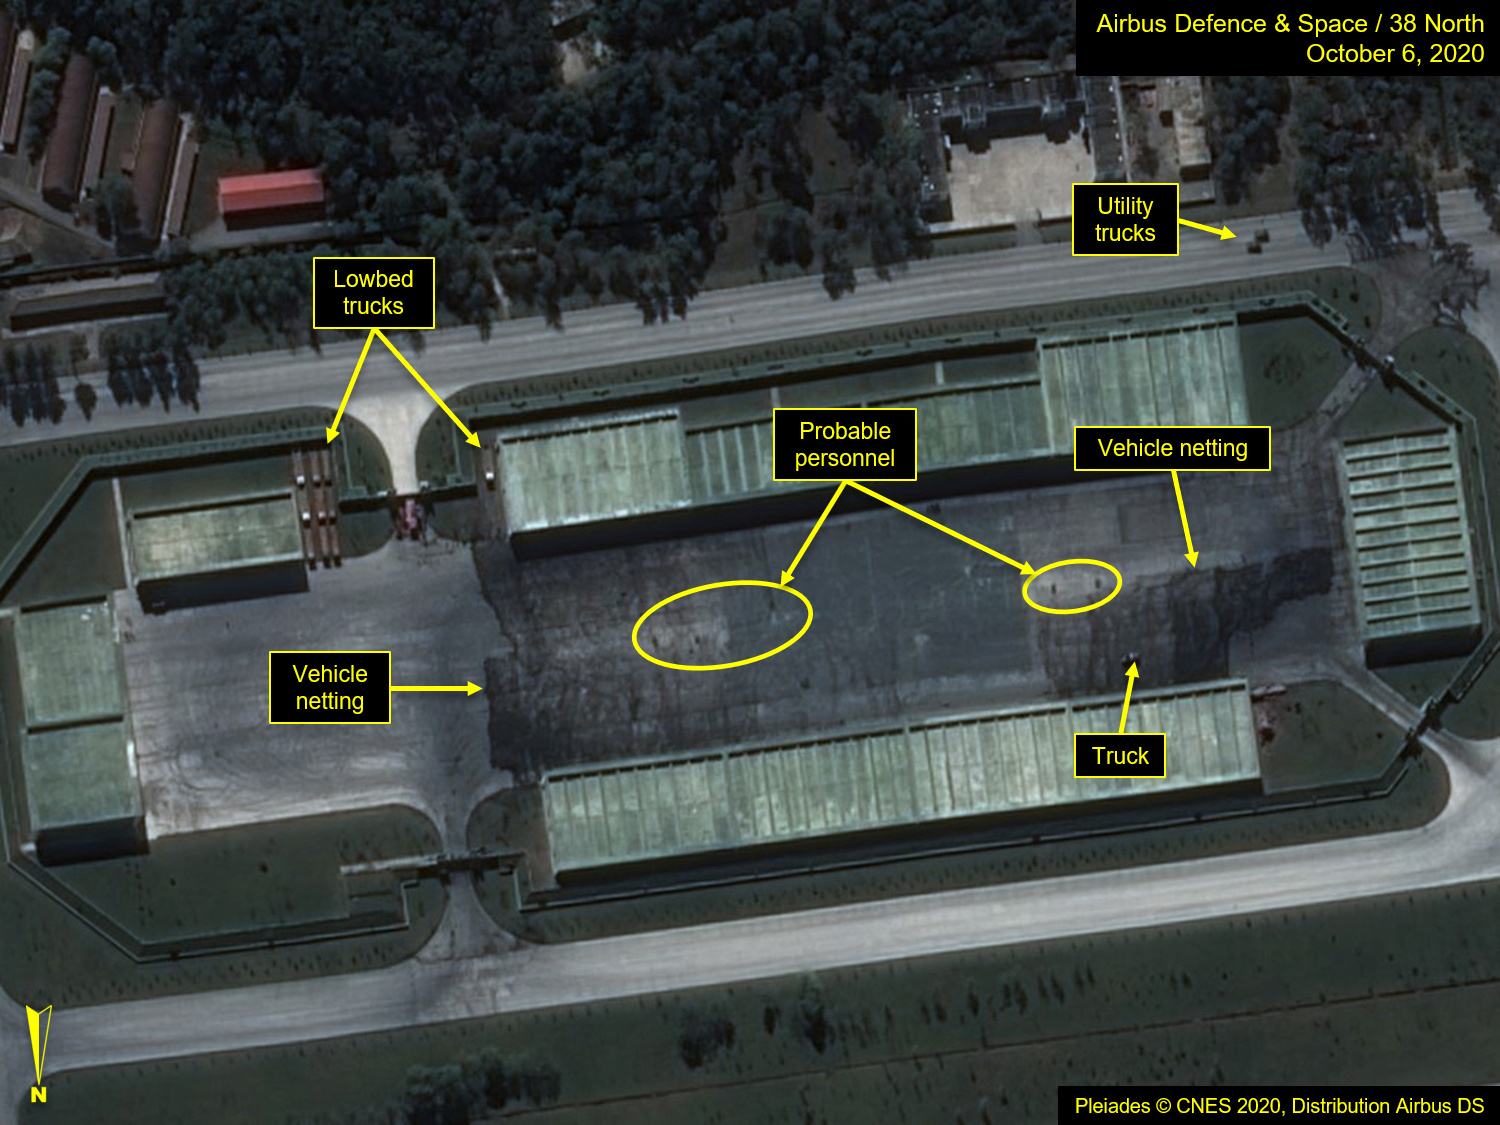 Un primer plano del complejo de almacenamiento de vehículos en el Campo de Entrenamiento de Desfiles (Airbus Defence & Space/38 North/Pleiades © CNES 2020 via REUTERS)